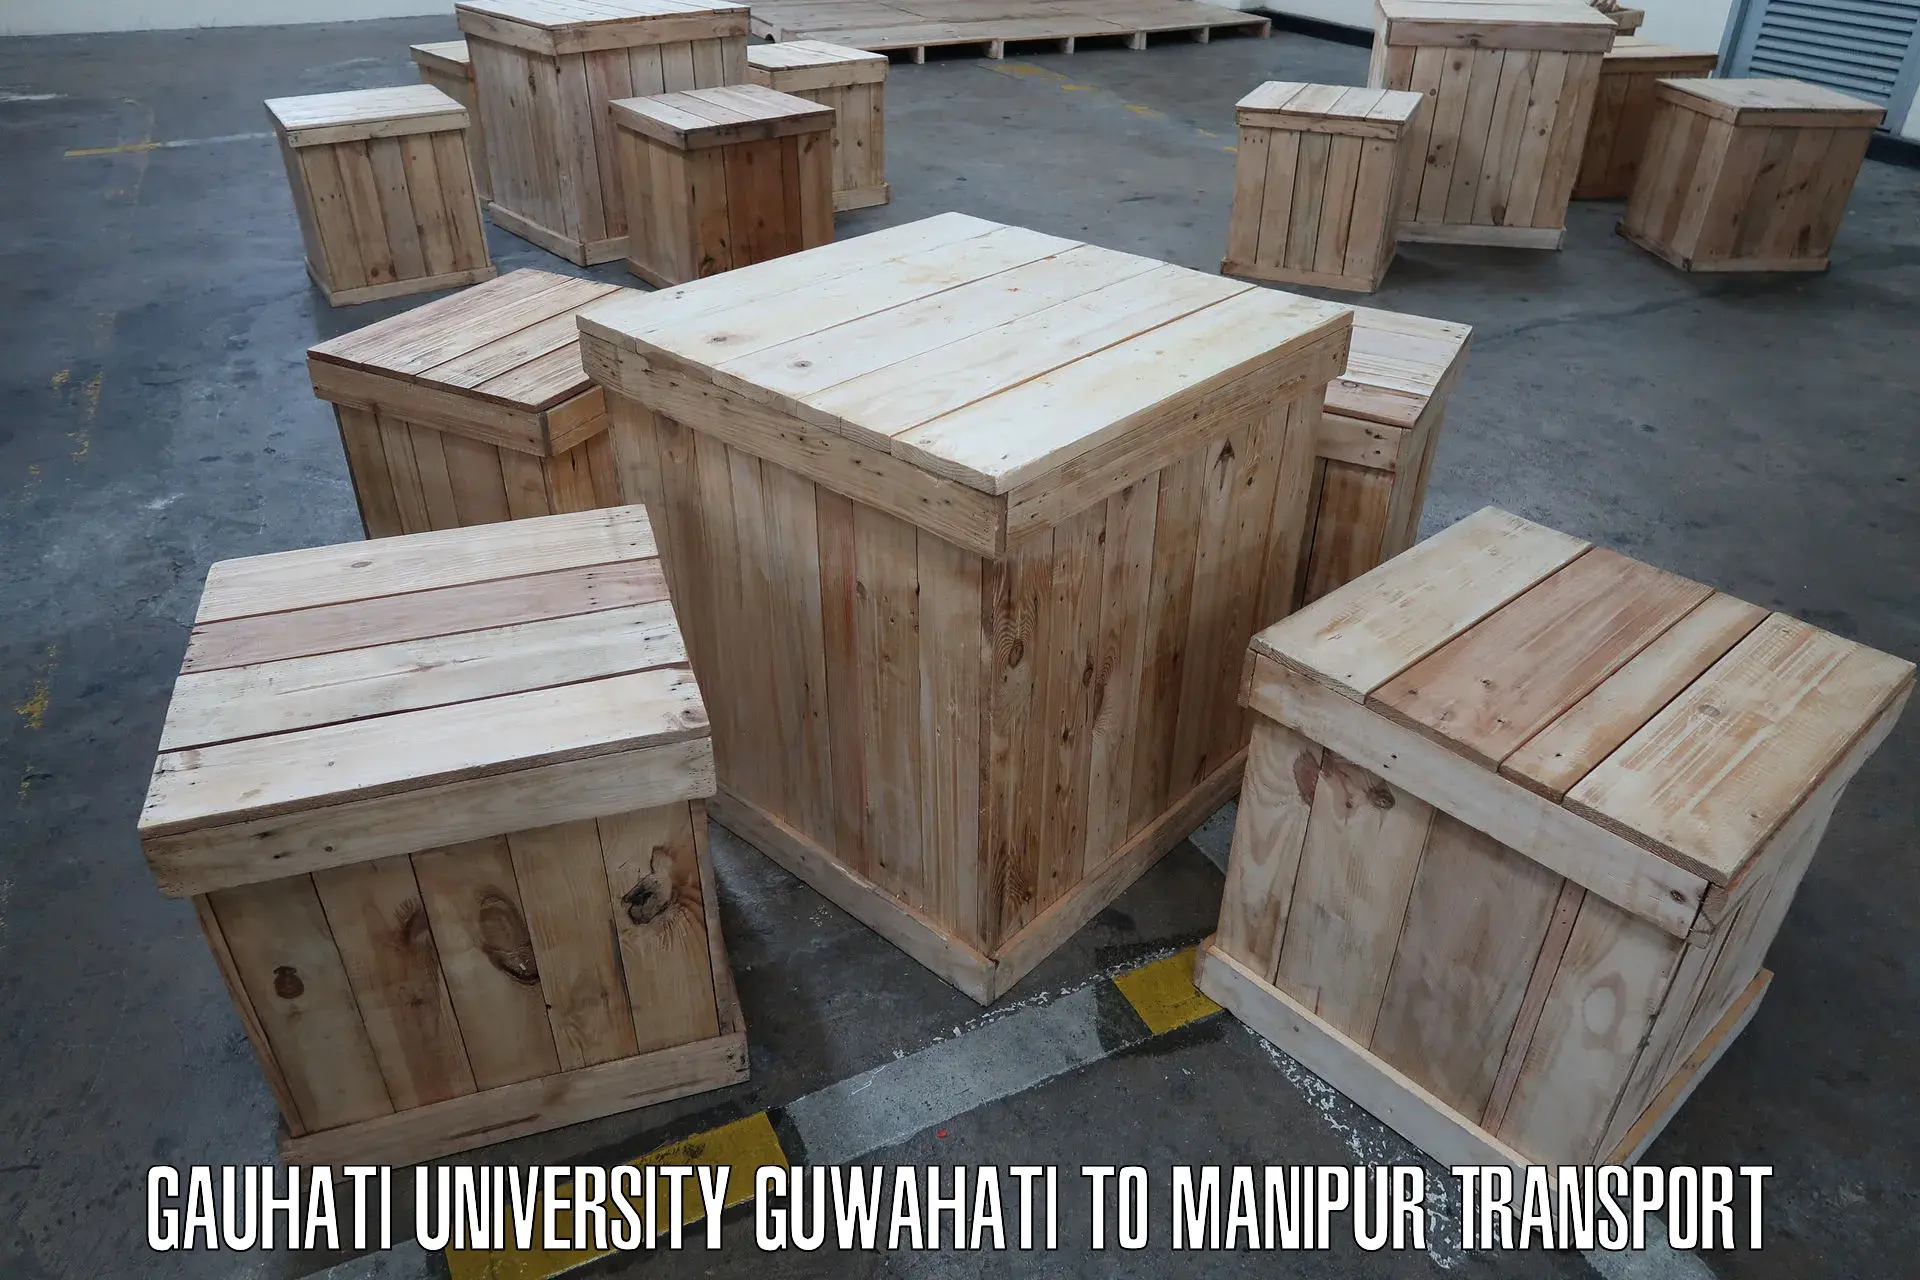 Furniture transport service Gauhati University Guwahati to Moirang